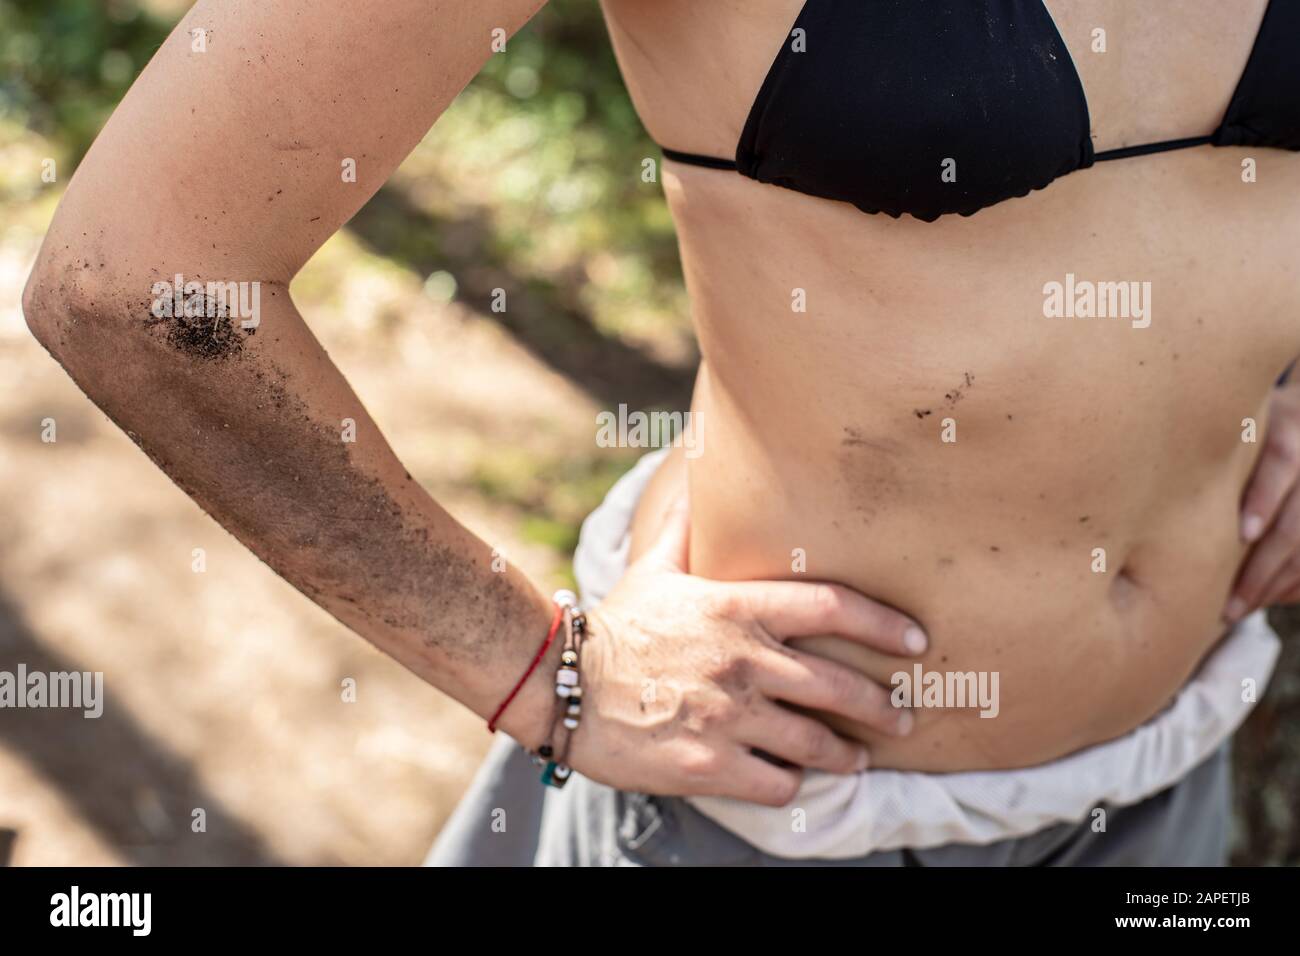 Weibliche Körper, Hand, Magen sind schmutzig mit Erde und Ruß von einem Lagerfeuer, in einem Camp an einem sonnigen Sommertag. Stockfoto